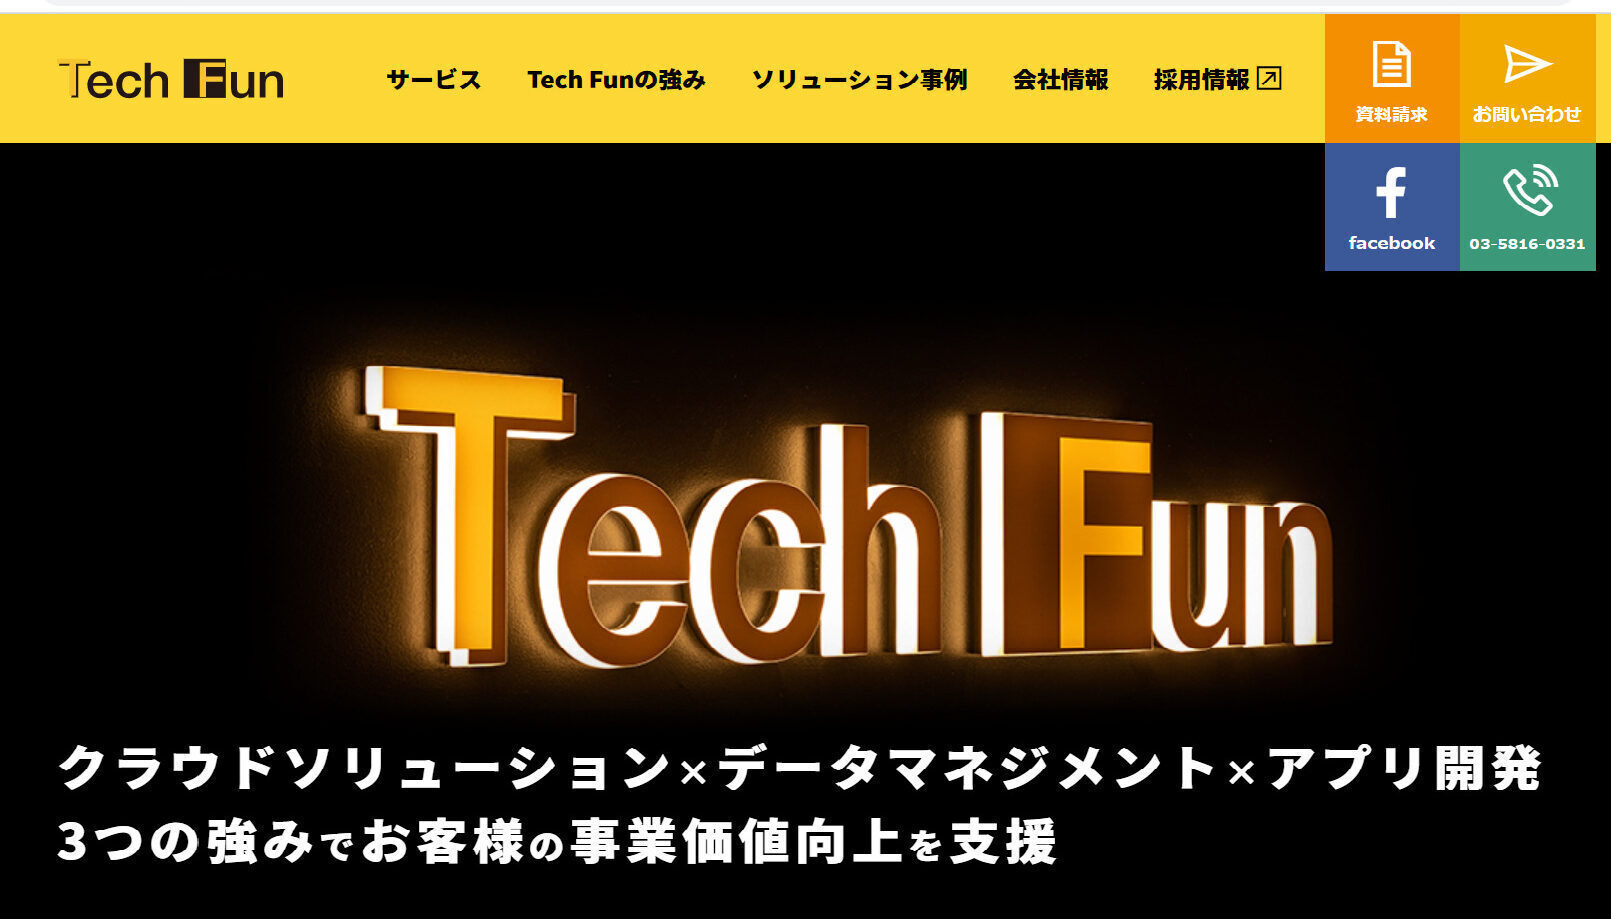 Tech Fan株式会社のホームページ